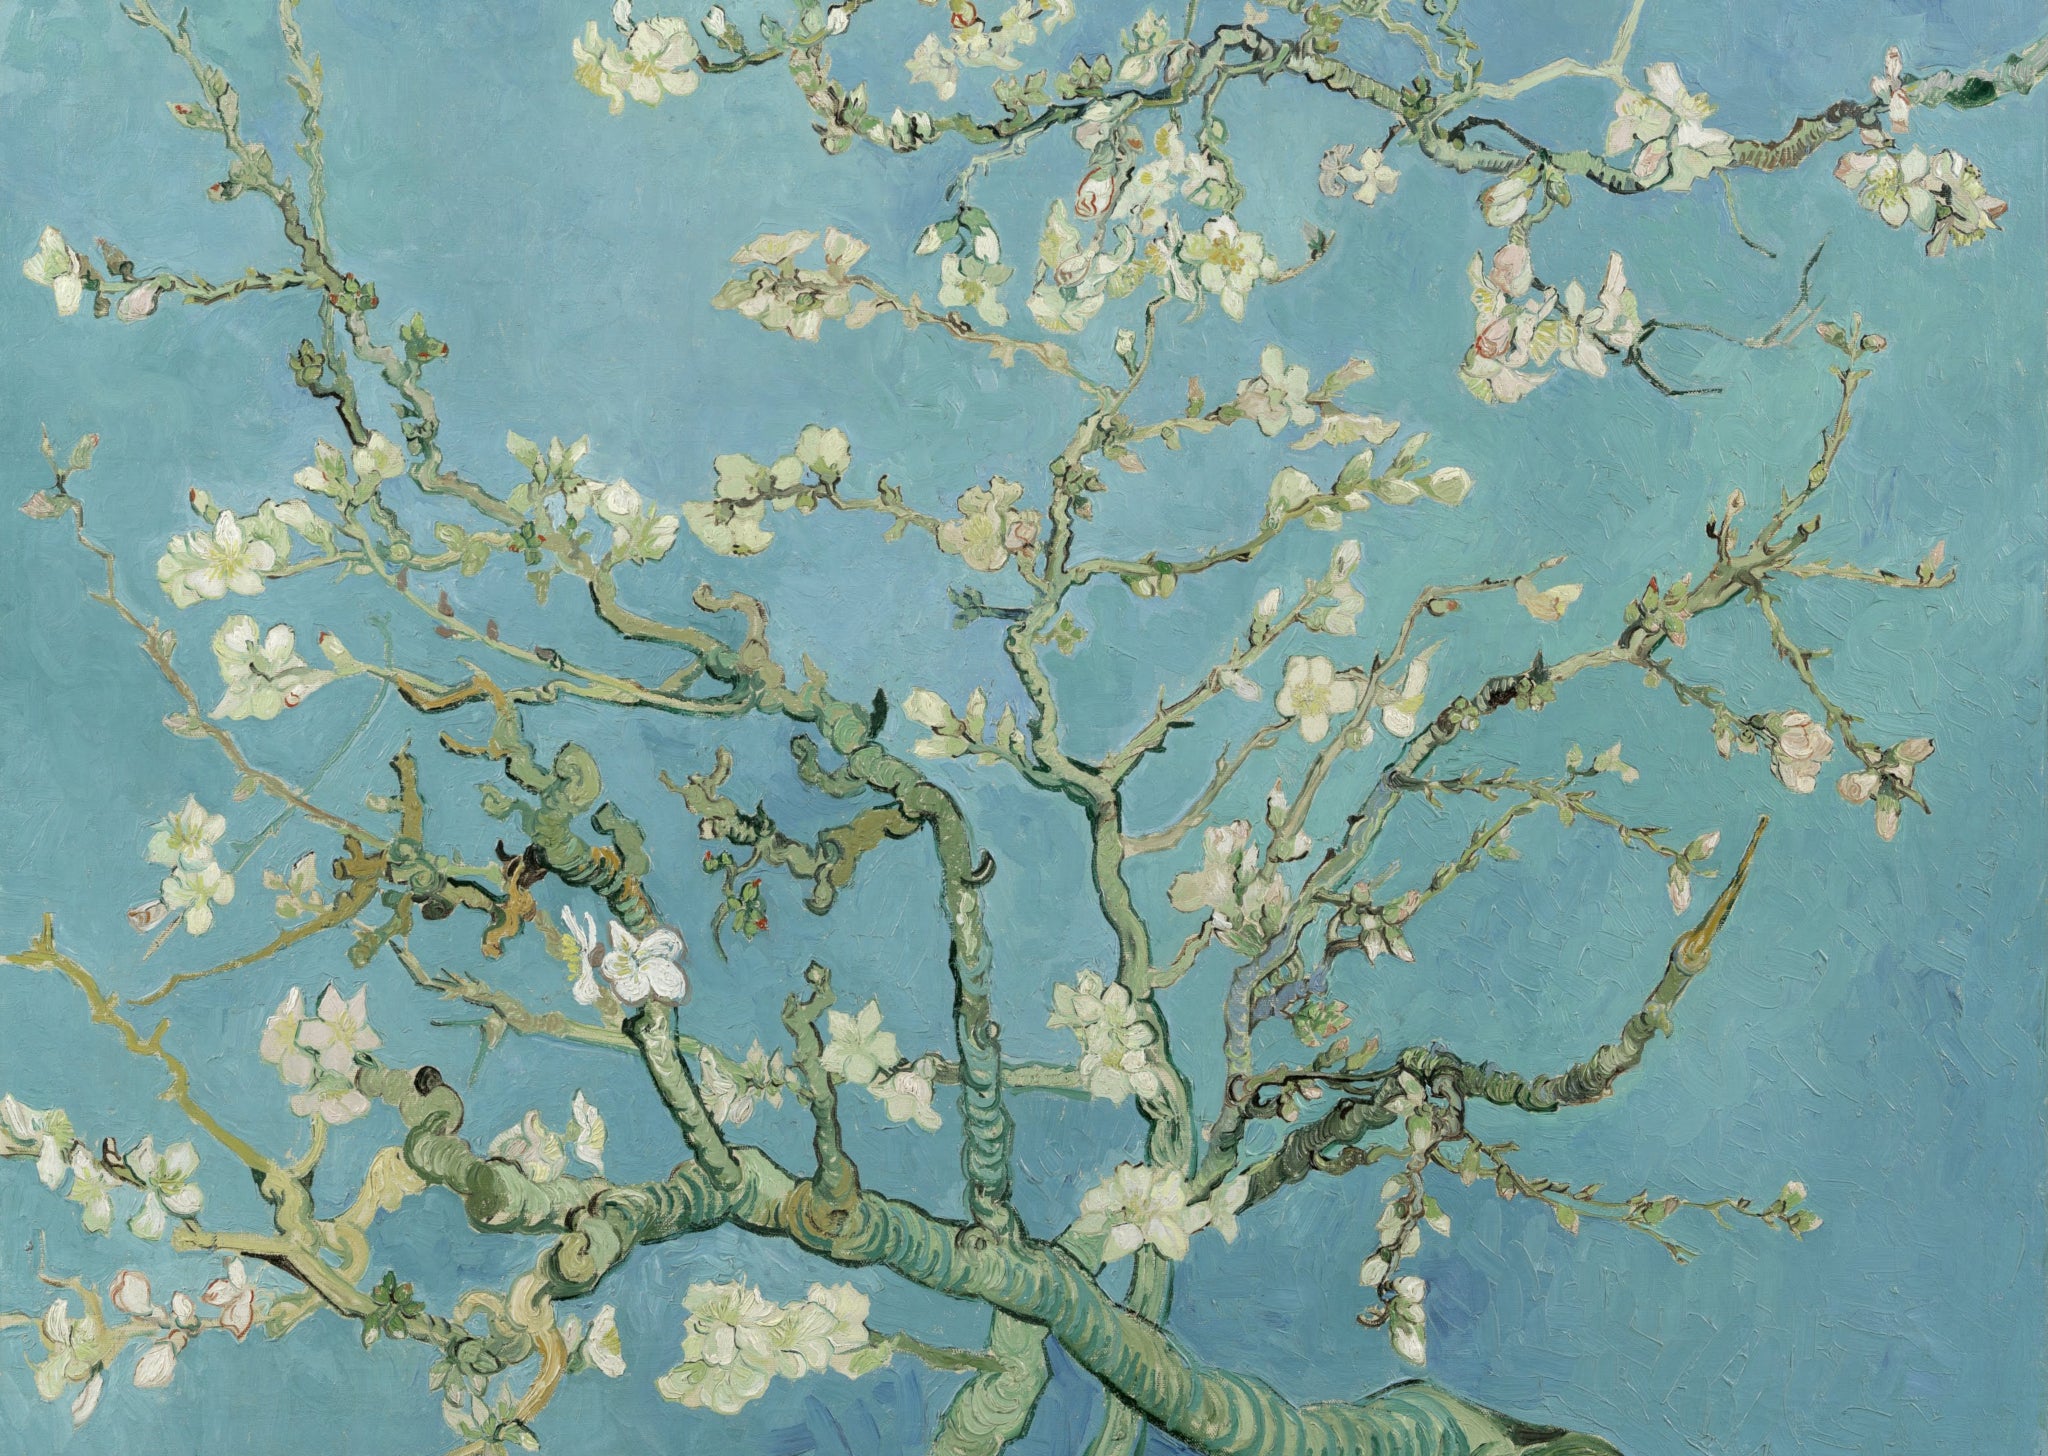 Vincent Van Gogh - Almond Blossom - A4 Mini Print/Poster